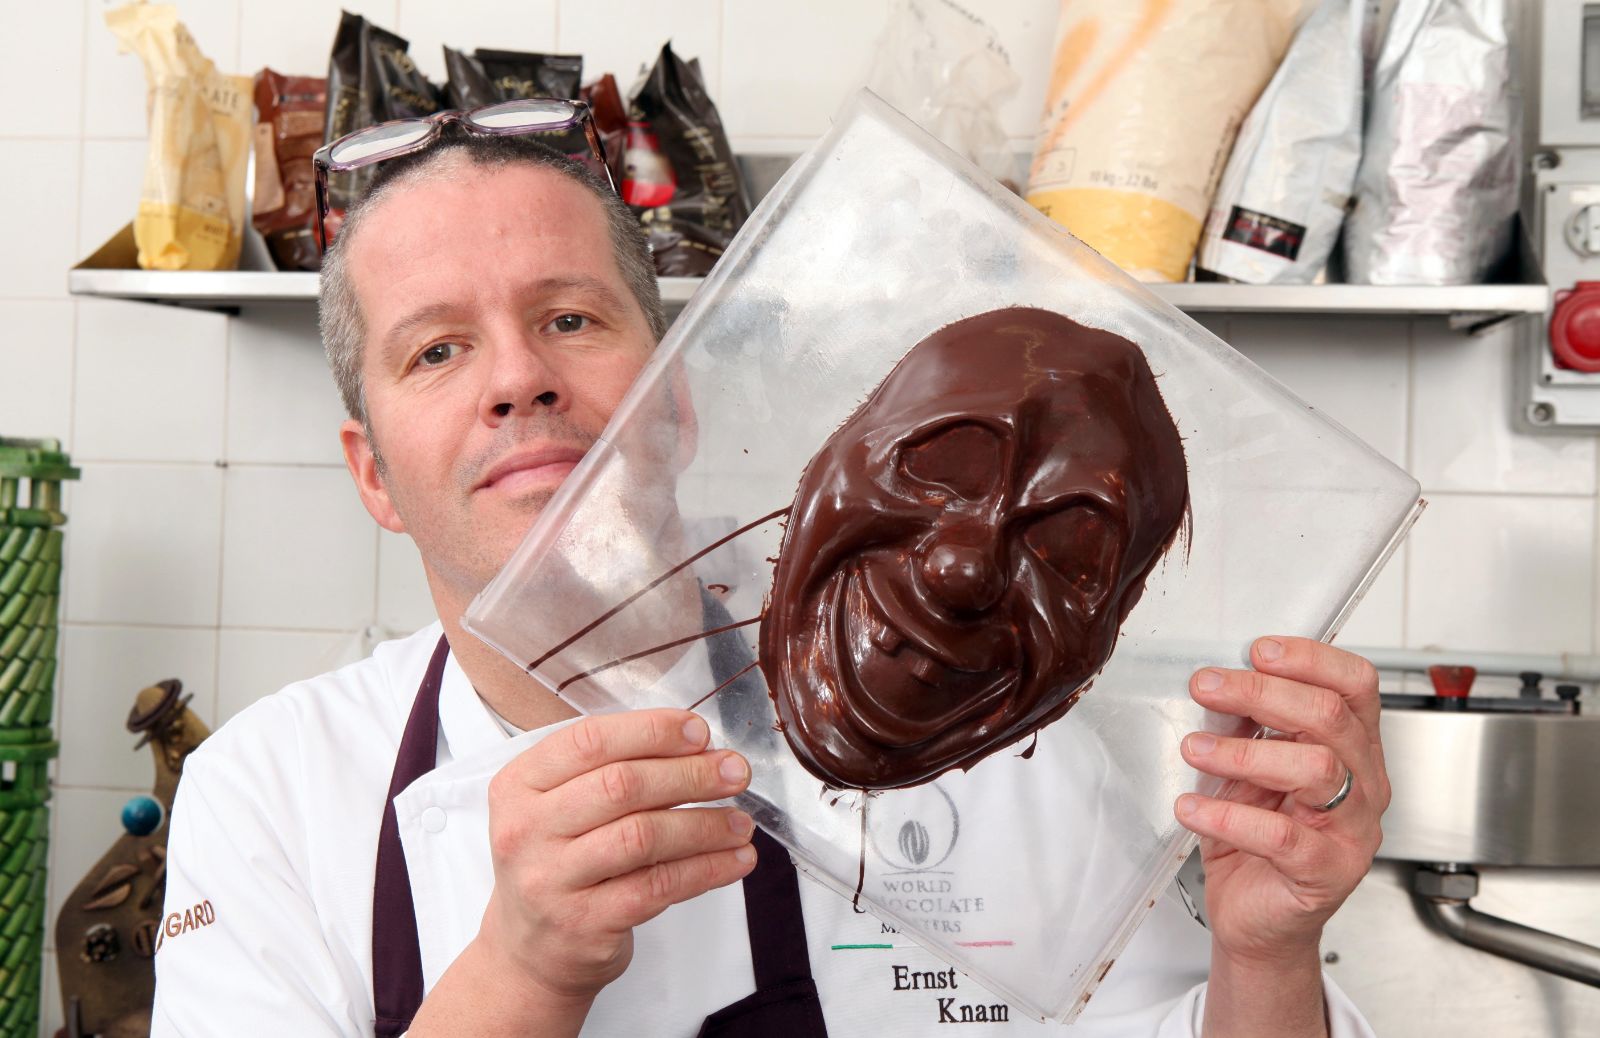 Ernst Knam e il cioccolato che non ti aspetti